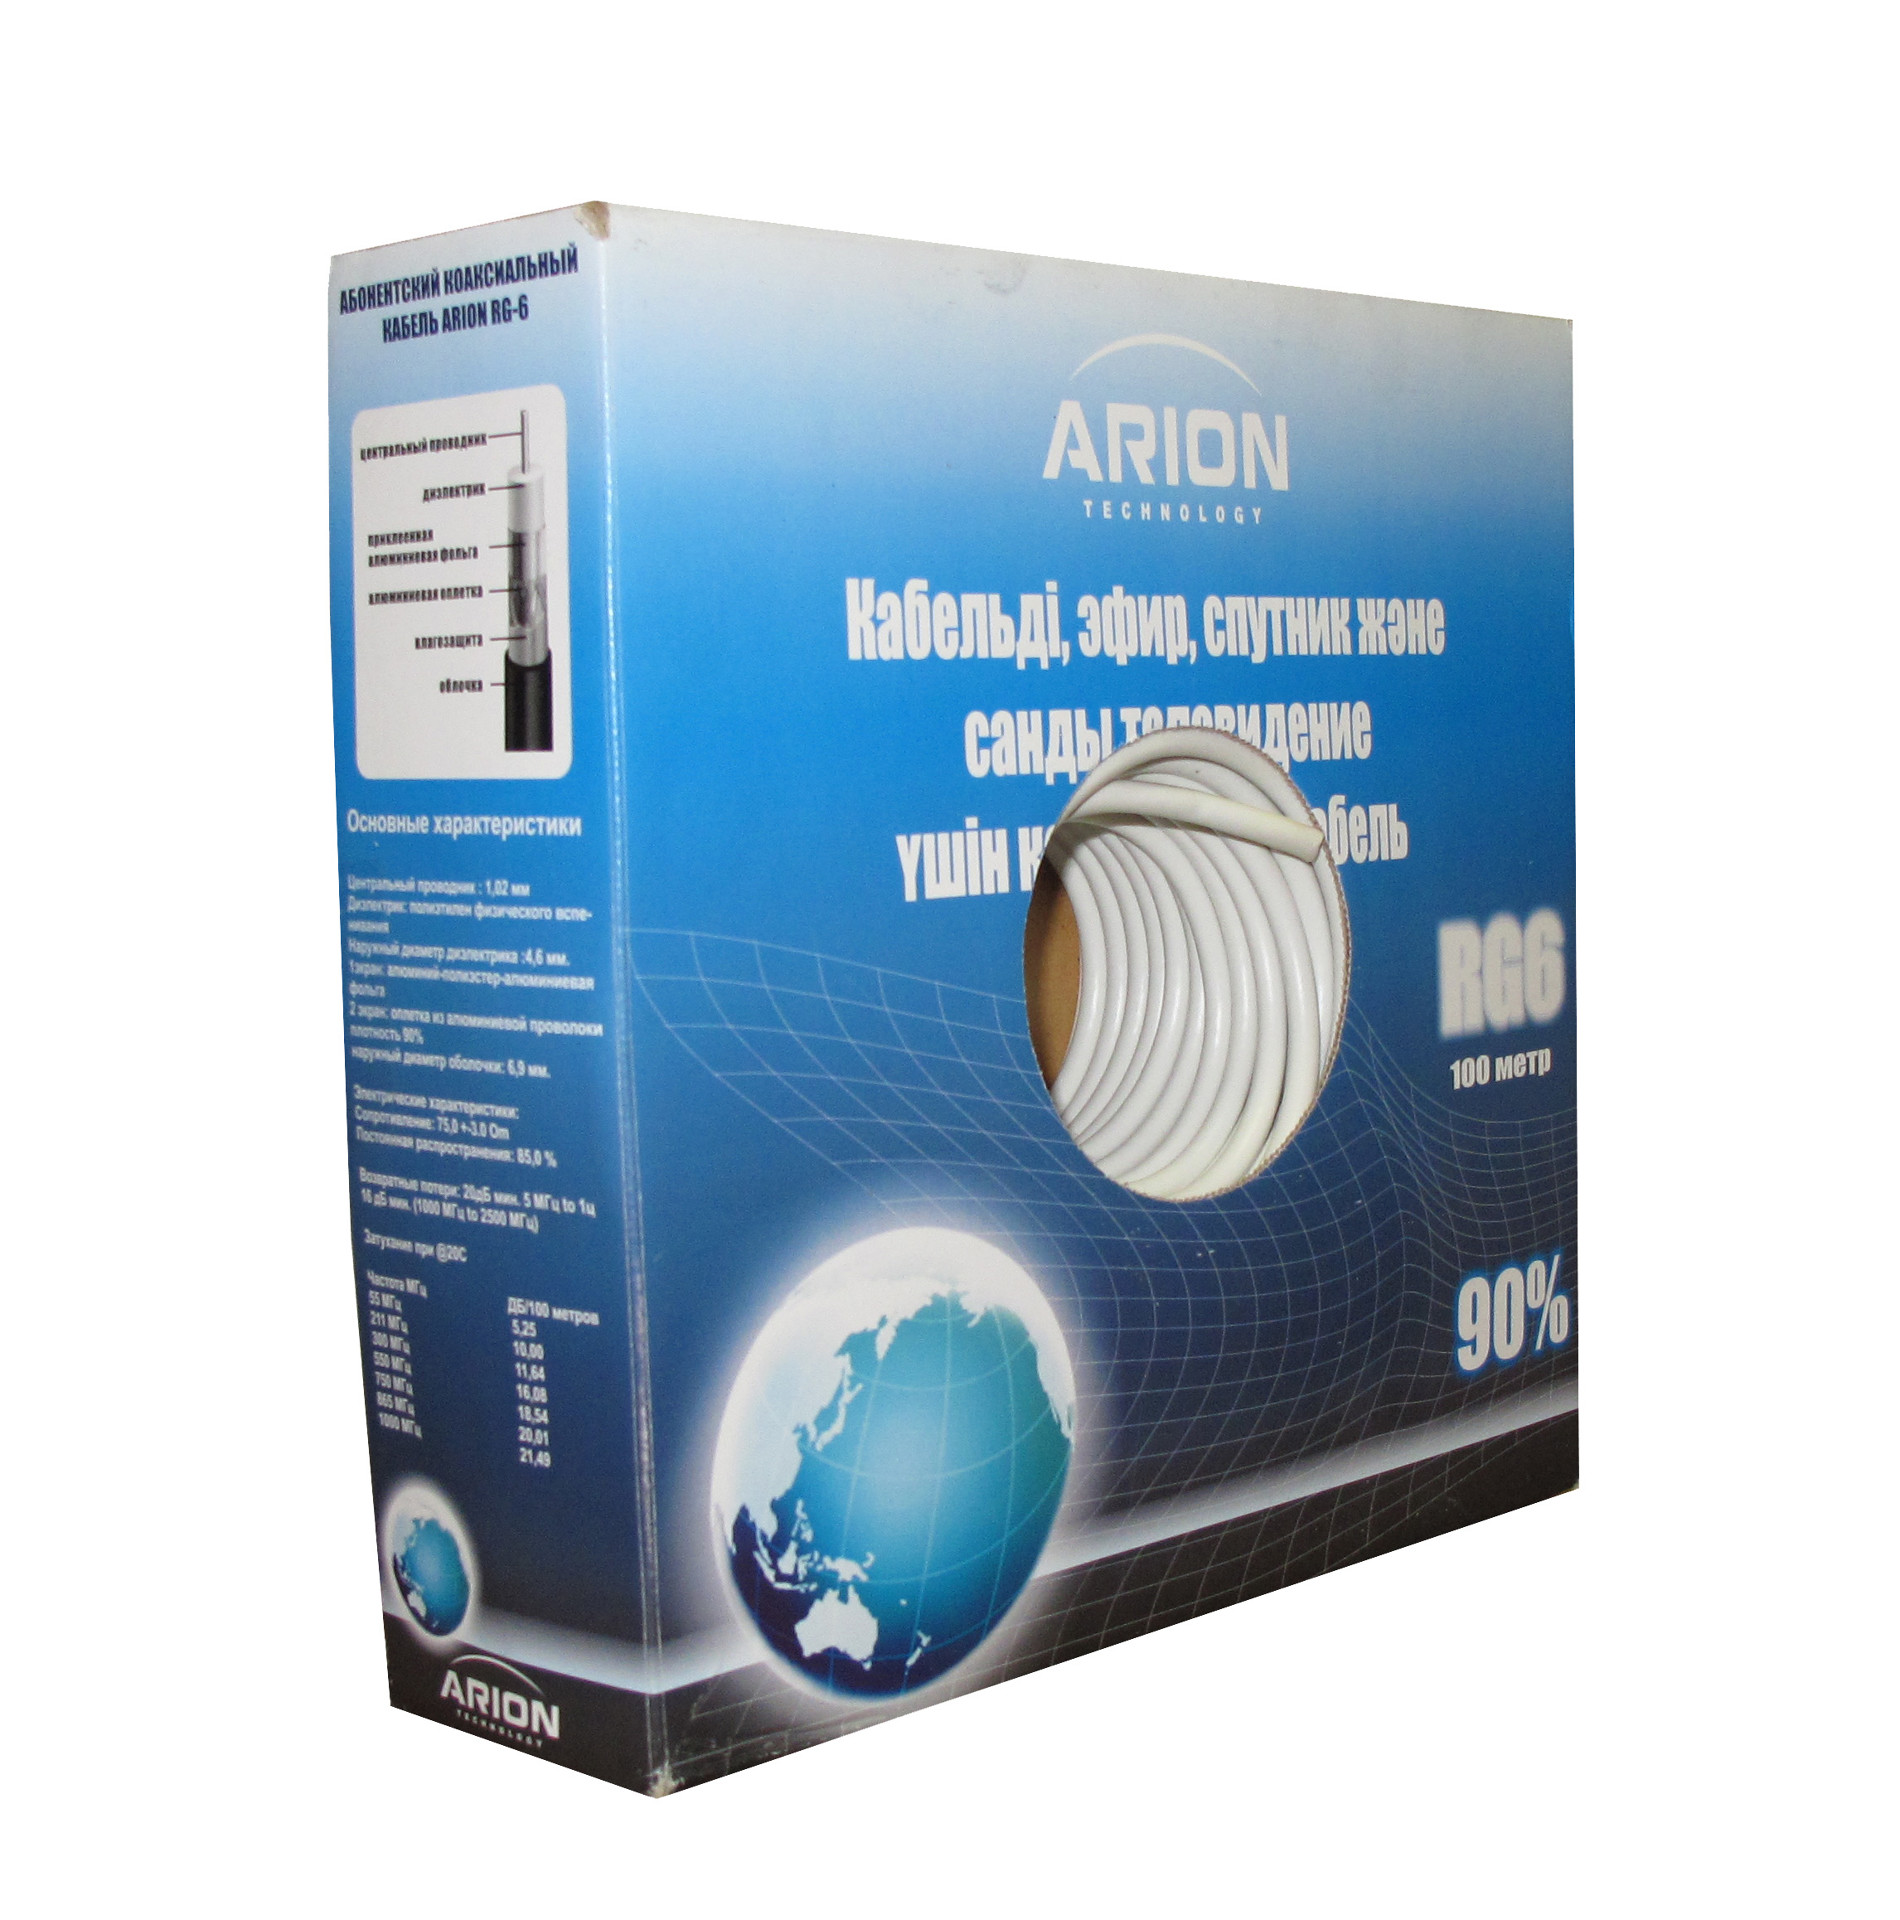 ARION RG 6 90% PREMIUM с гелием абонентский кабель